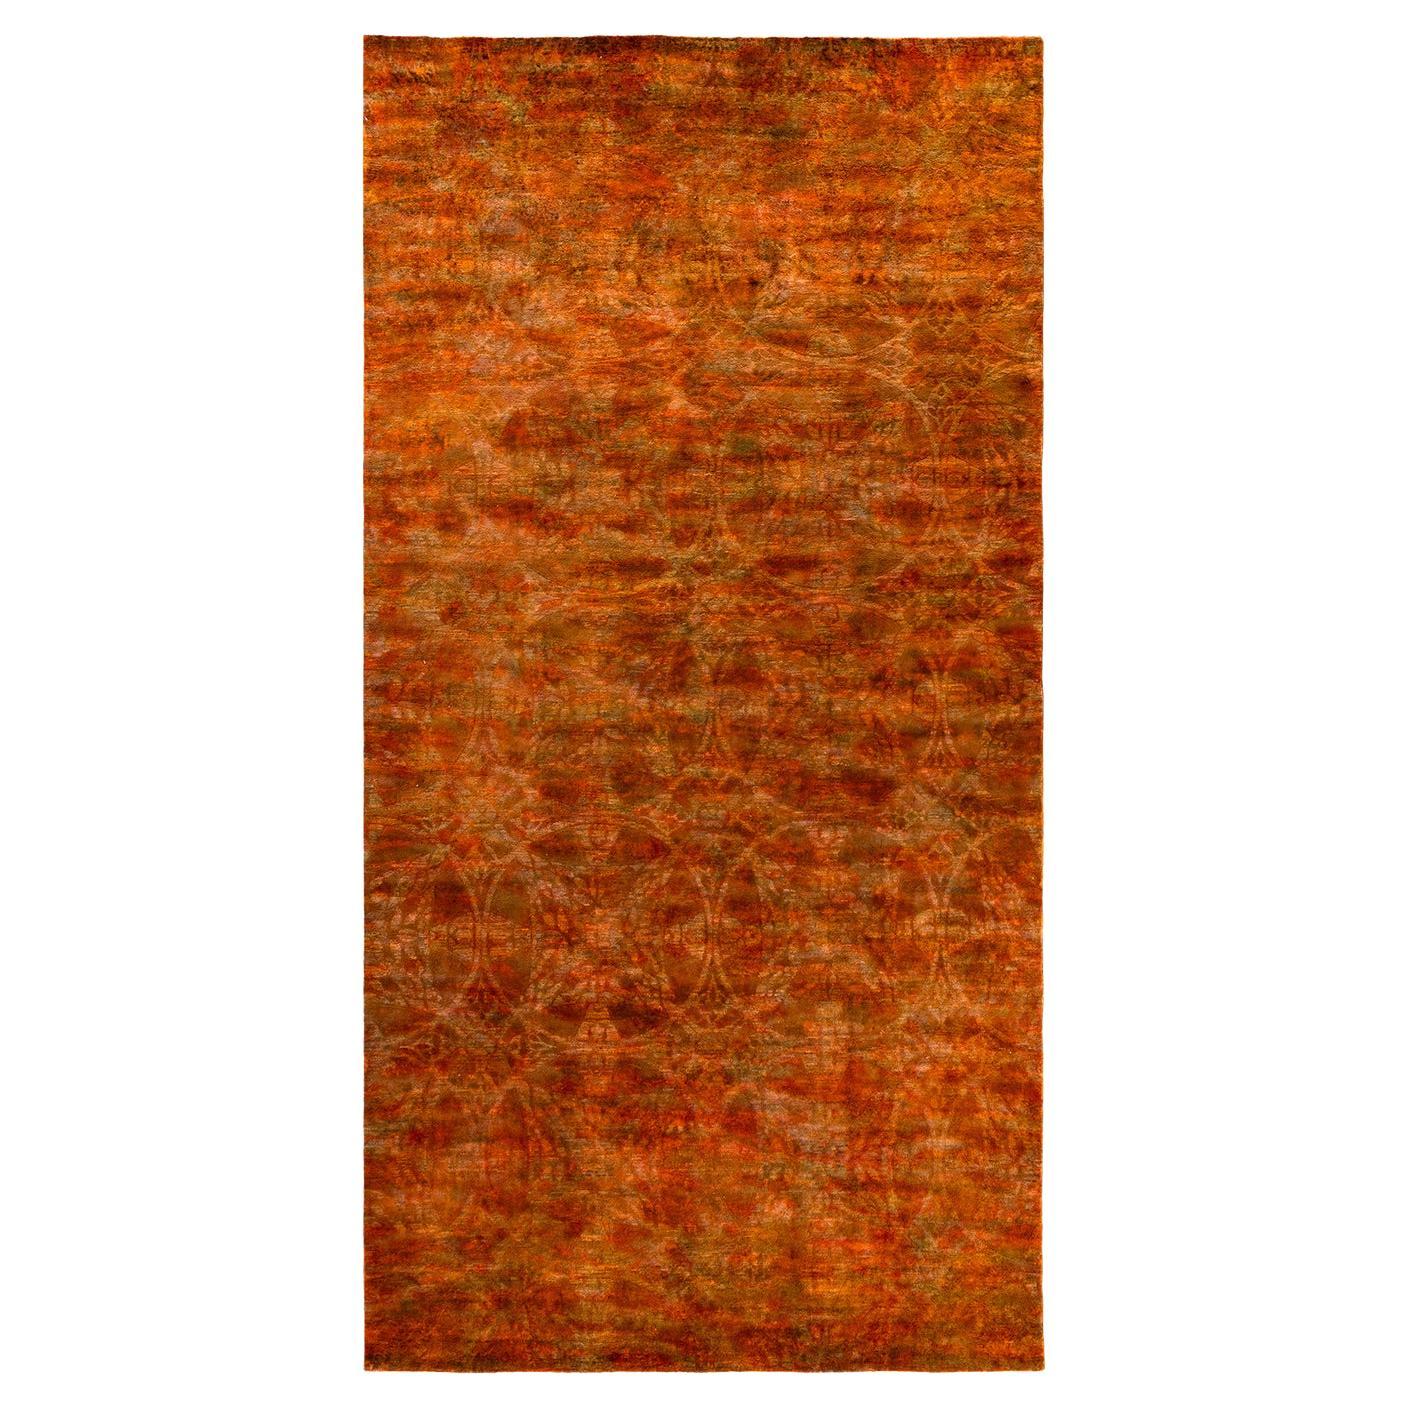 Orangefarbener Teppich aus handgeknüpfter Wolle, gefärbt